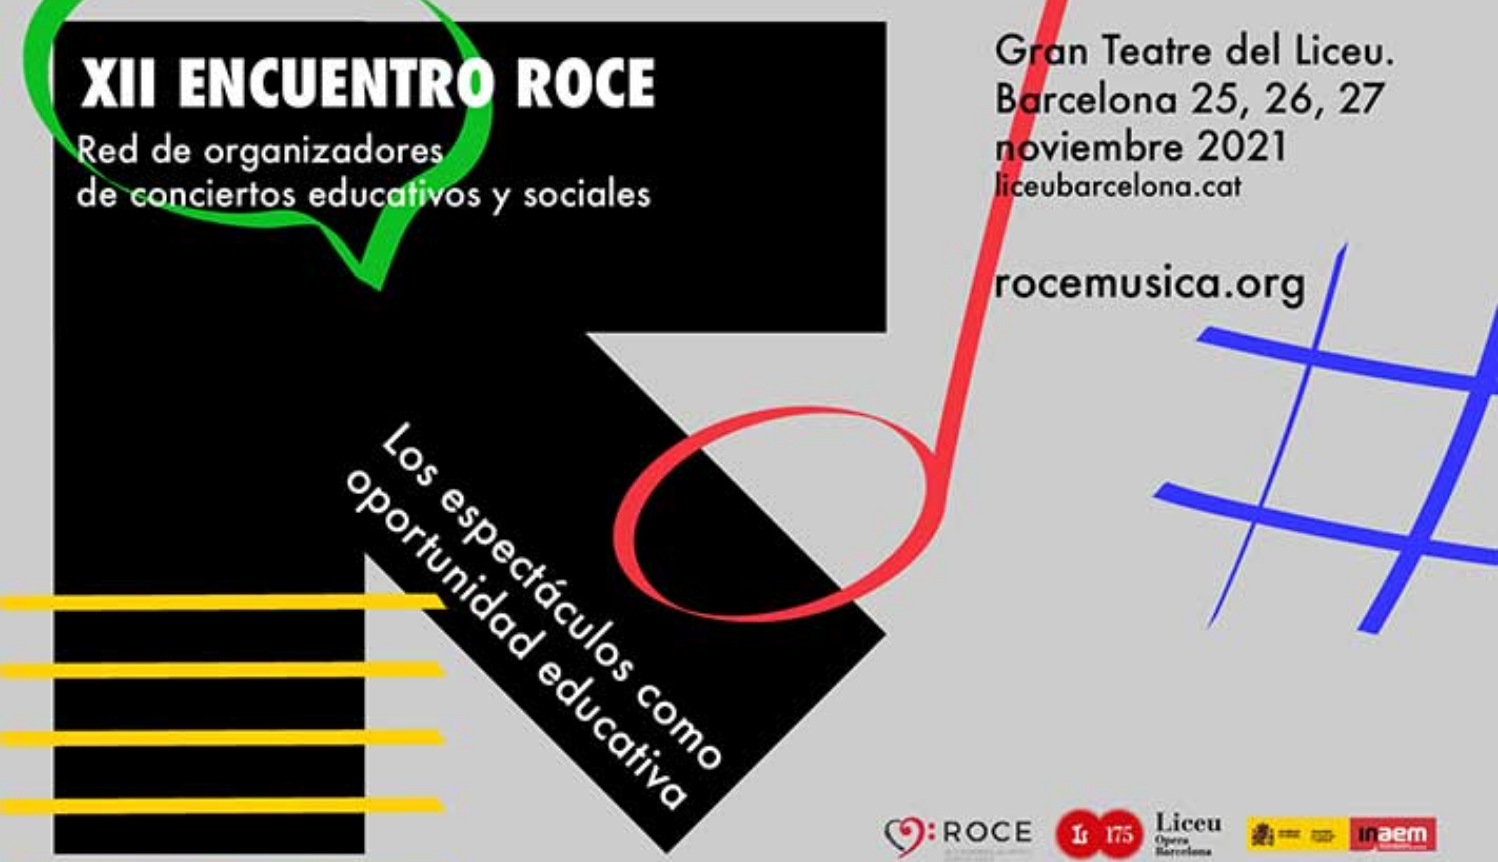 Encuentro ROCE 2021: Els espectacles com a oportunitat educativa